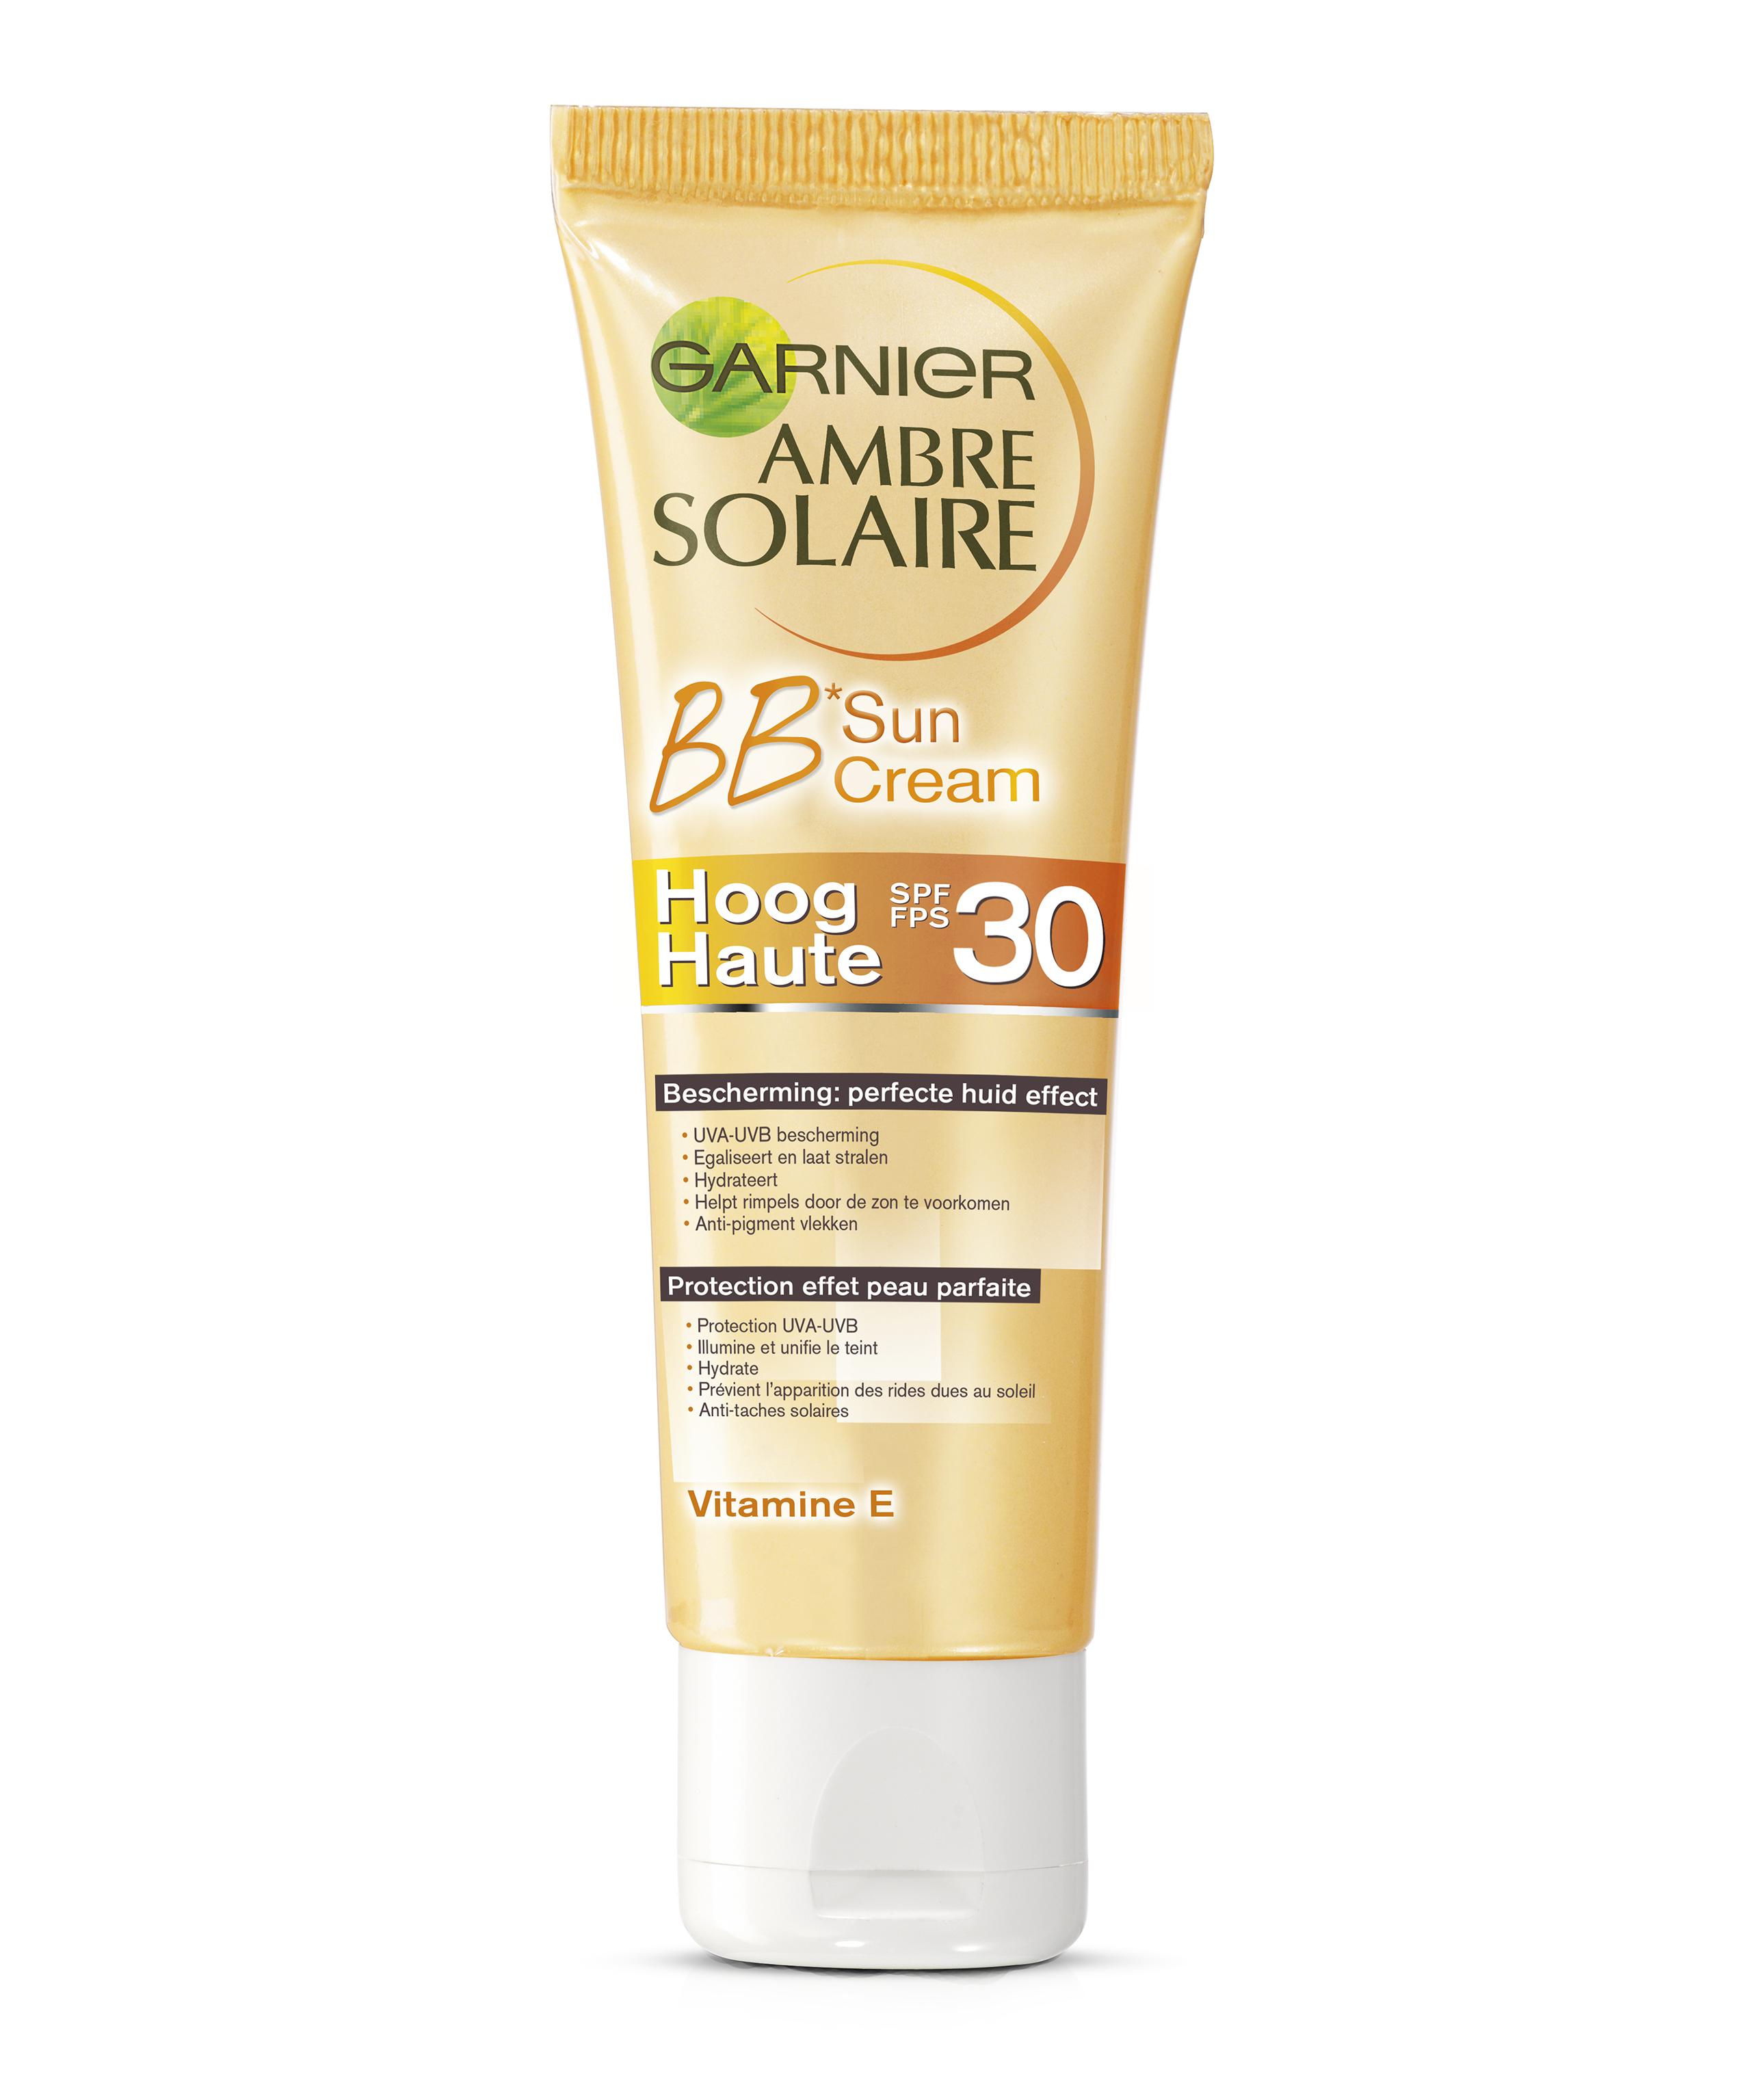 Ambre Solaire BB Sun Cream SPF 30 - Garnier